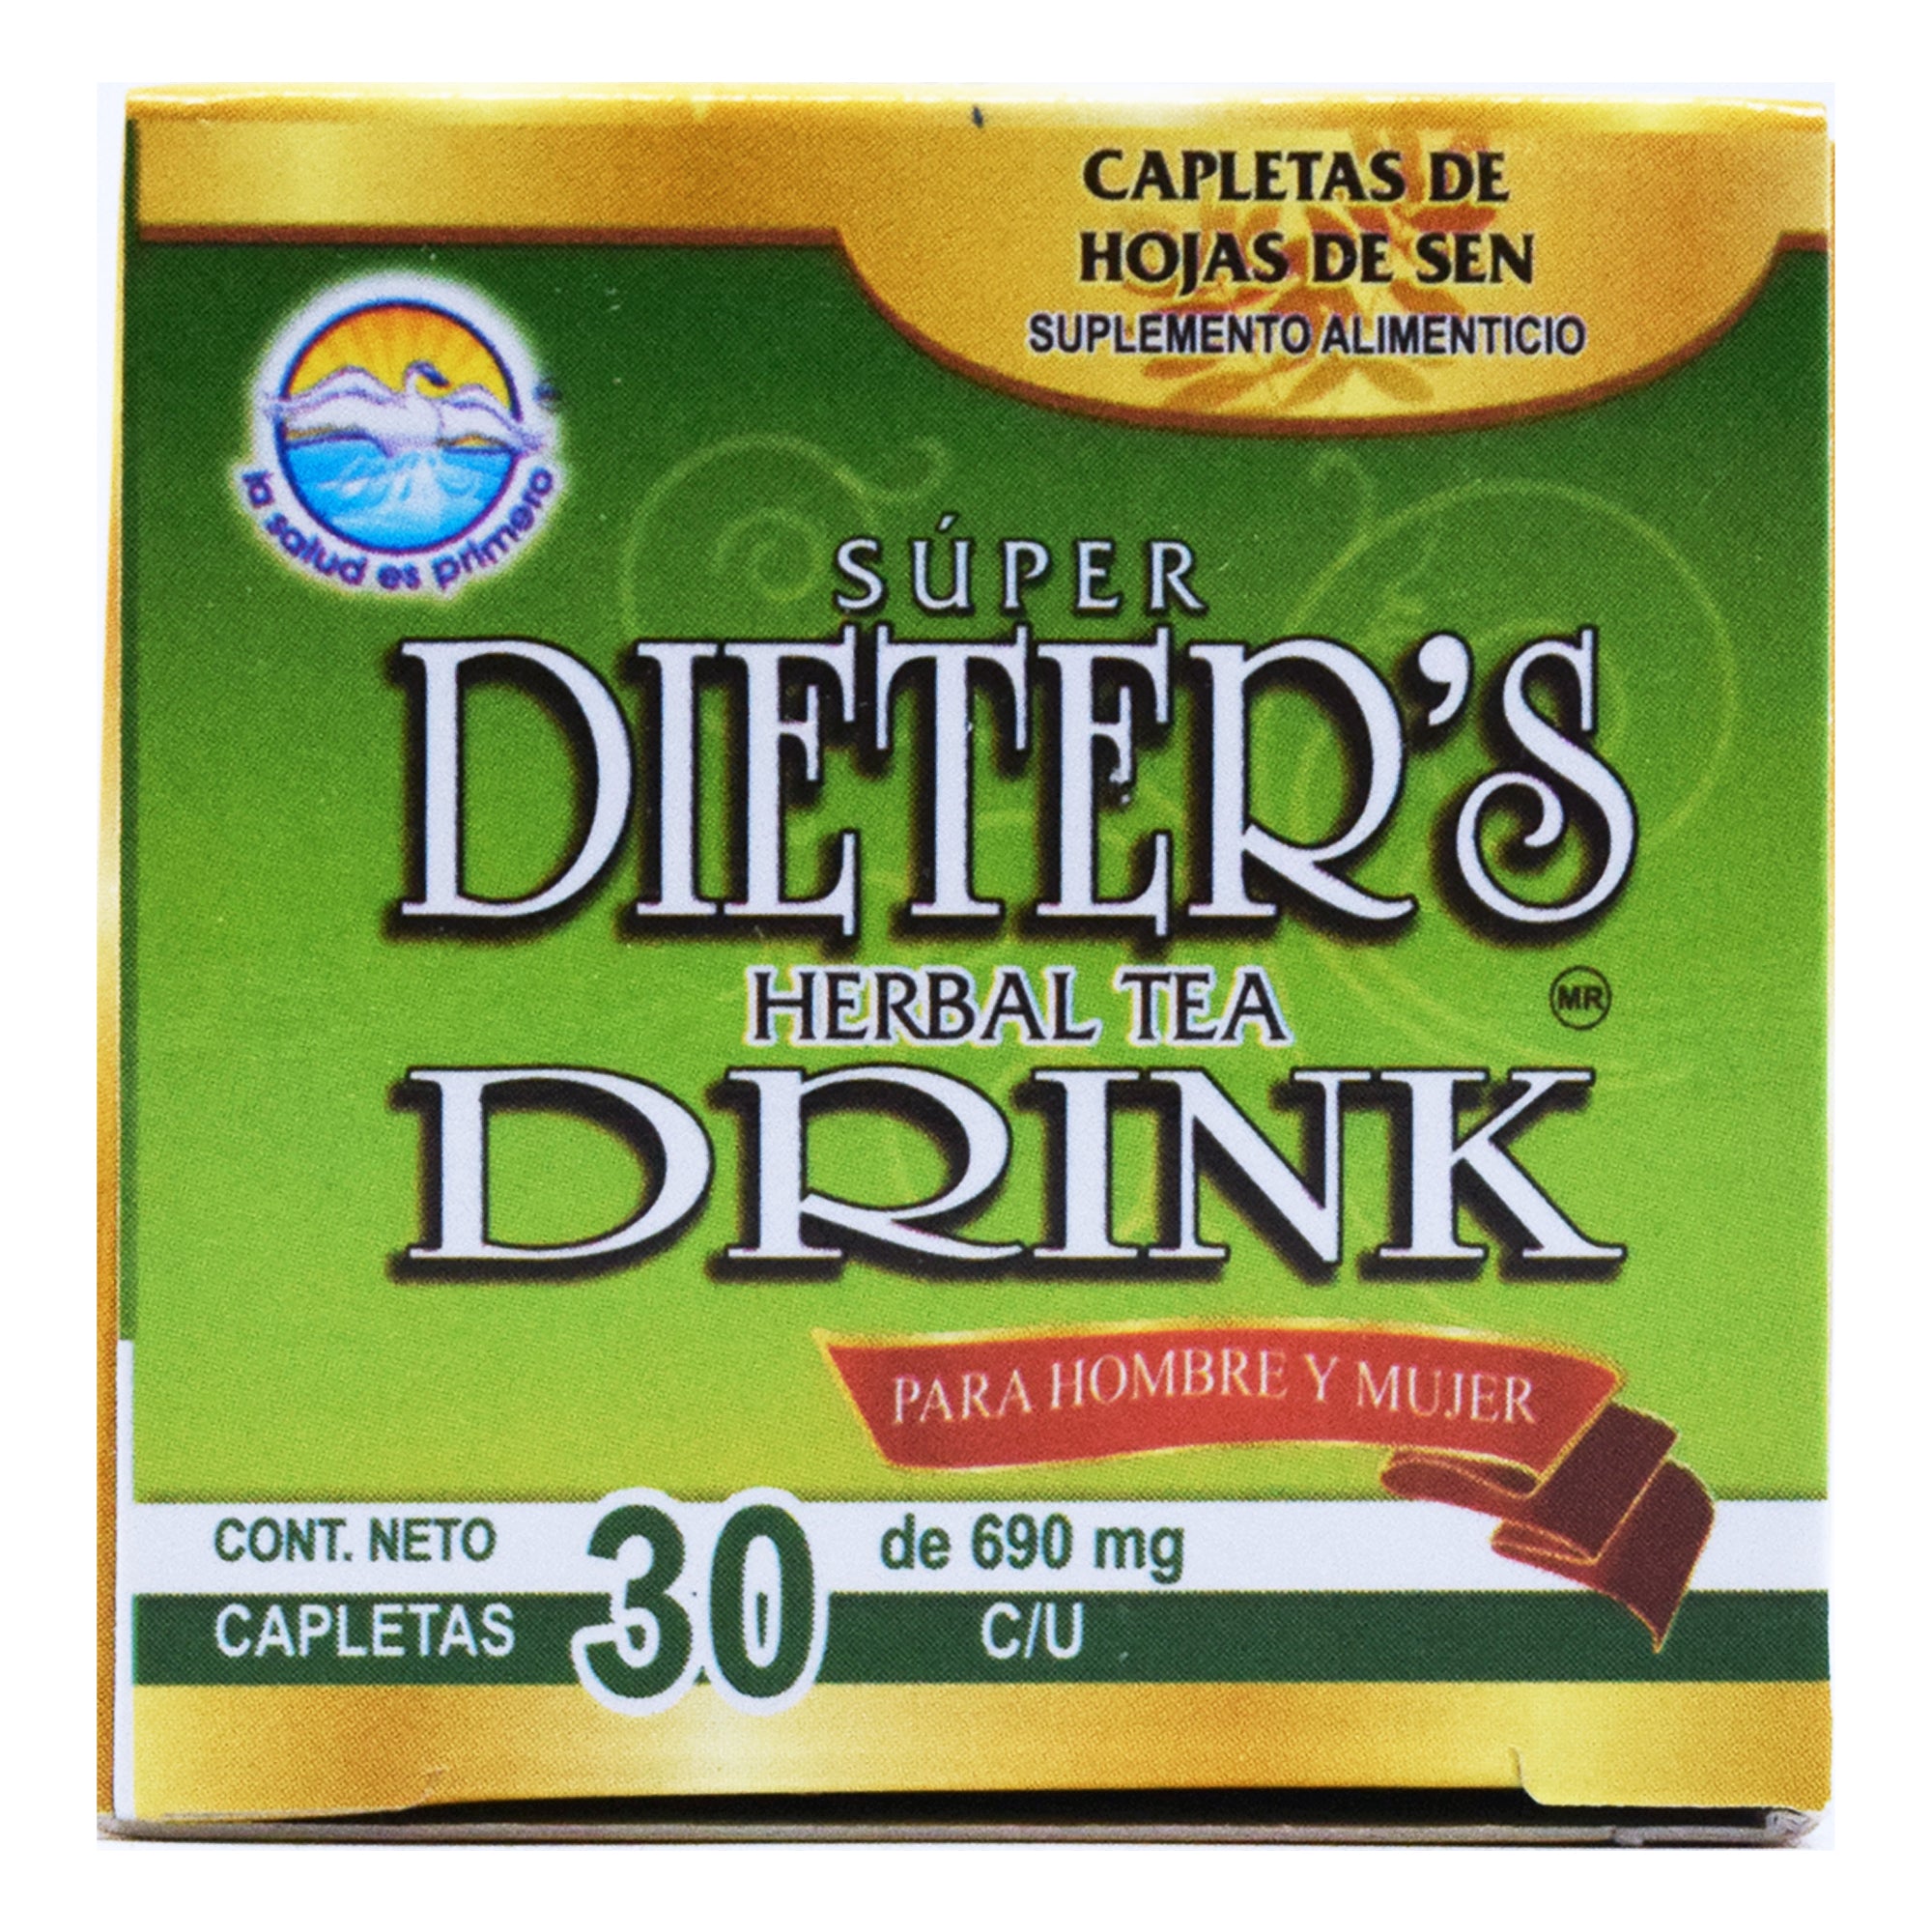 DIETERS DRINK 30 CAPLETAS